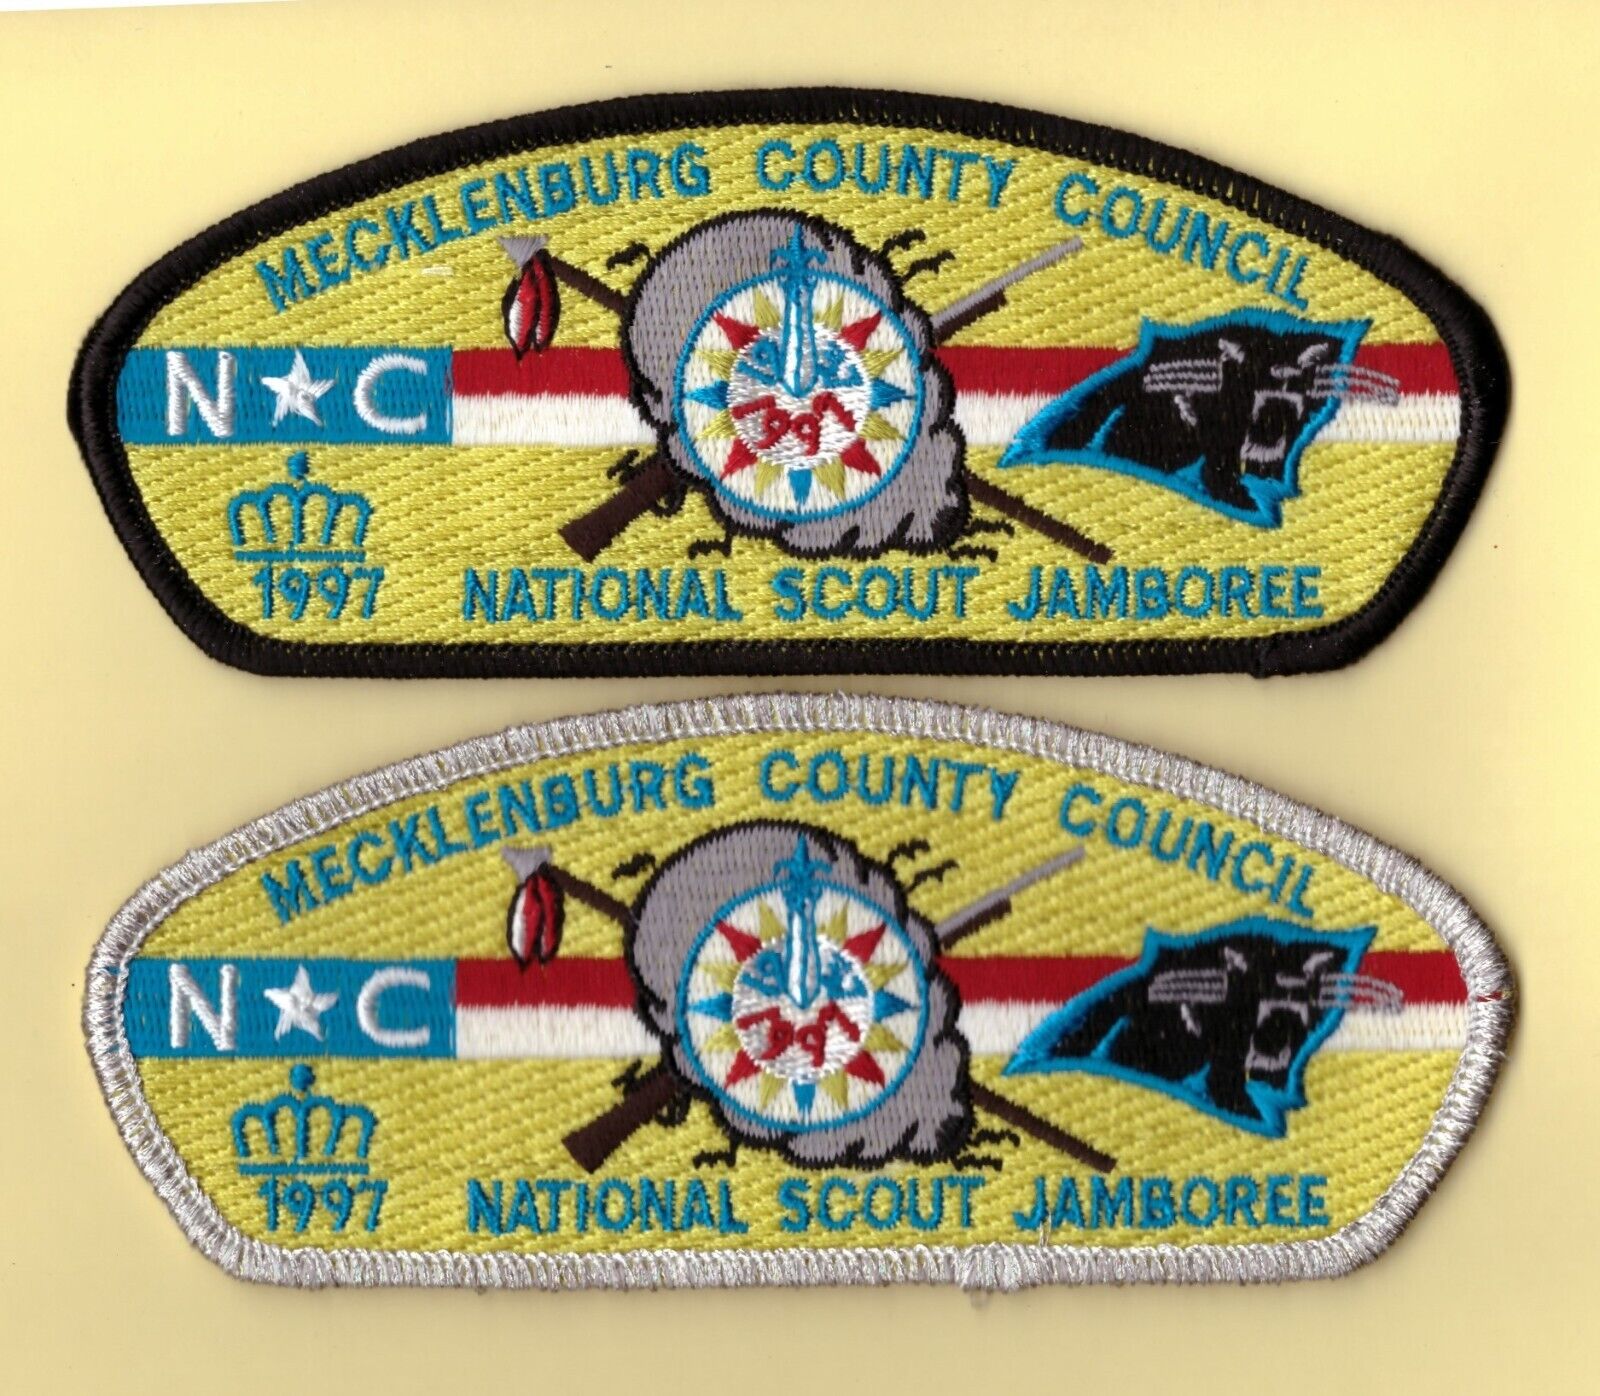 JSP  -  Mecklenburg County Council - Mint - Nat'l Jamboree 1997 -  NC - Set of 2